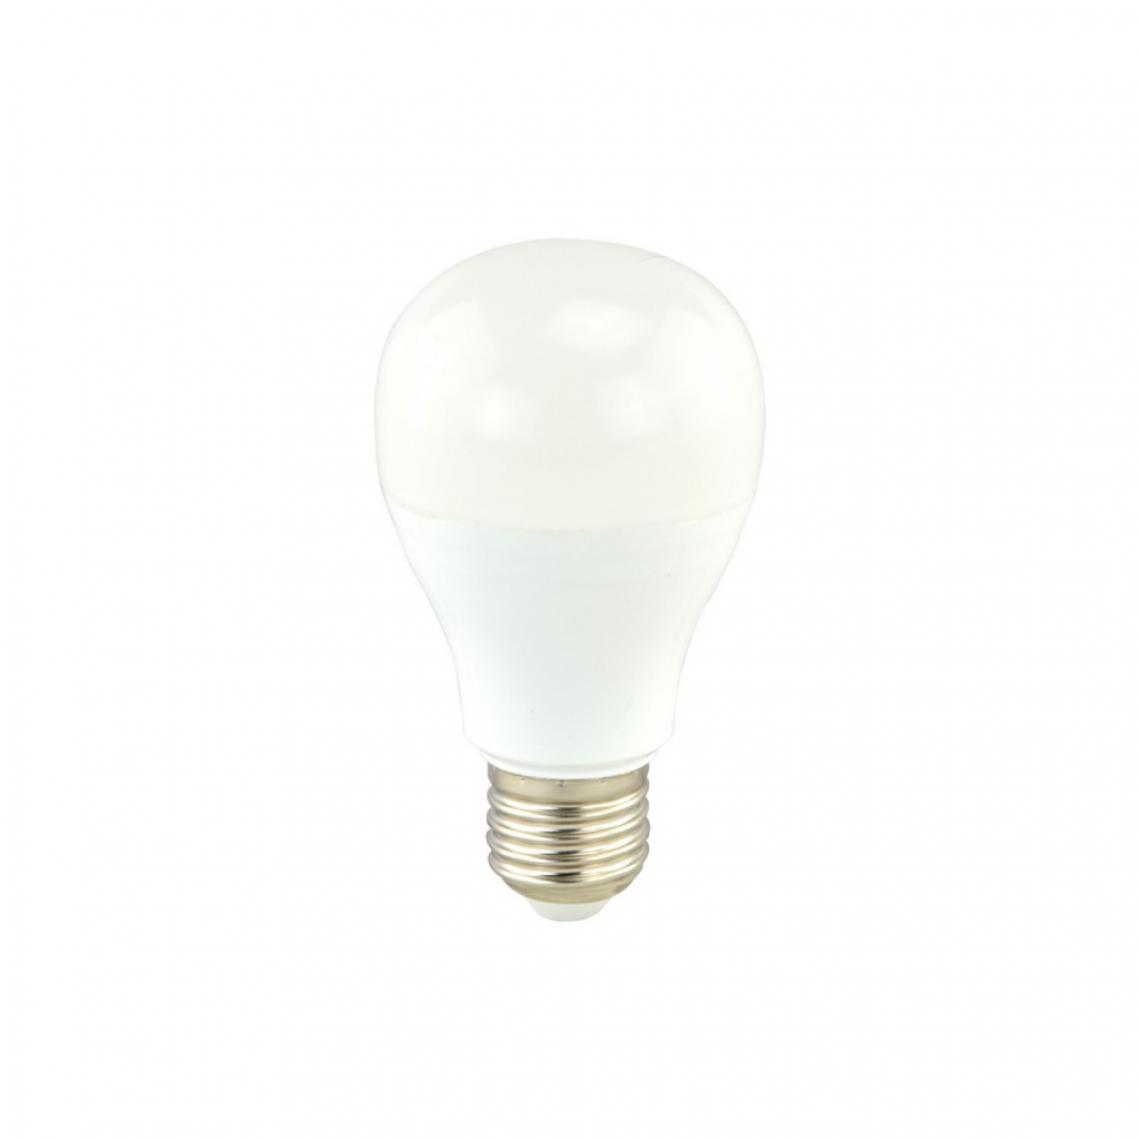 Alpexe - Ampoule LED E27 A60 13 W 1521 lm 4000 K - Ampoules LED